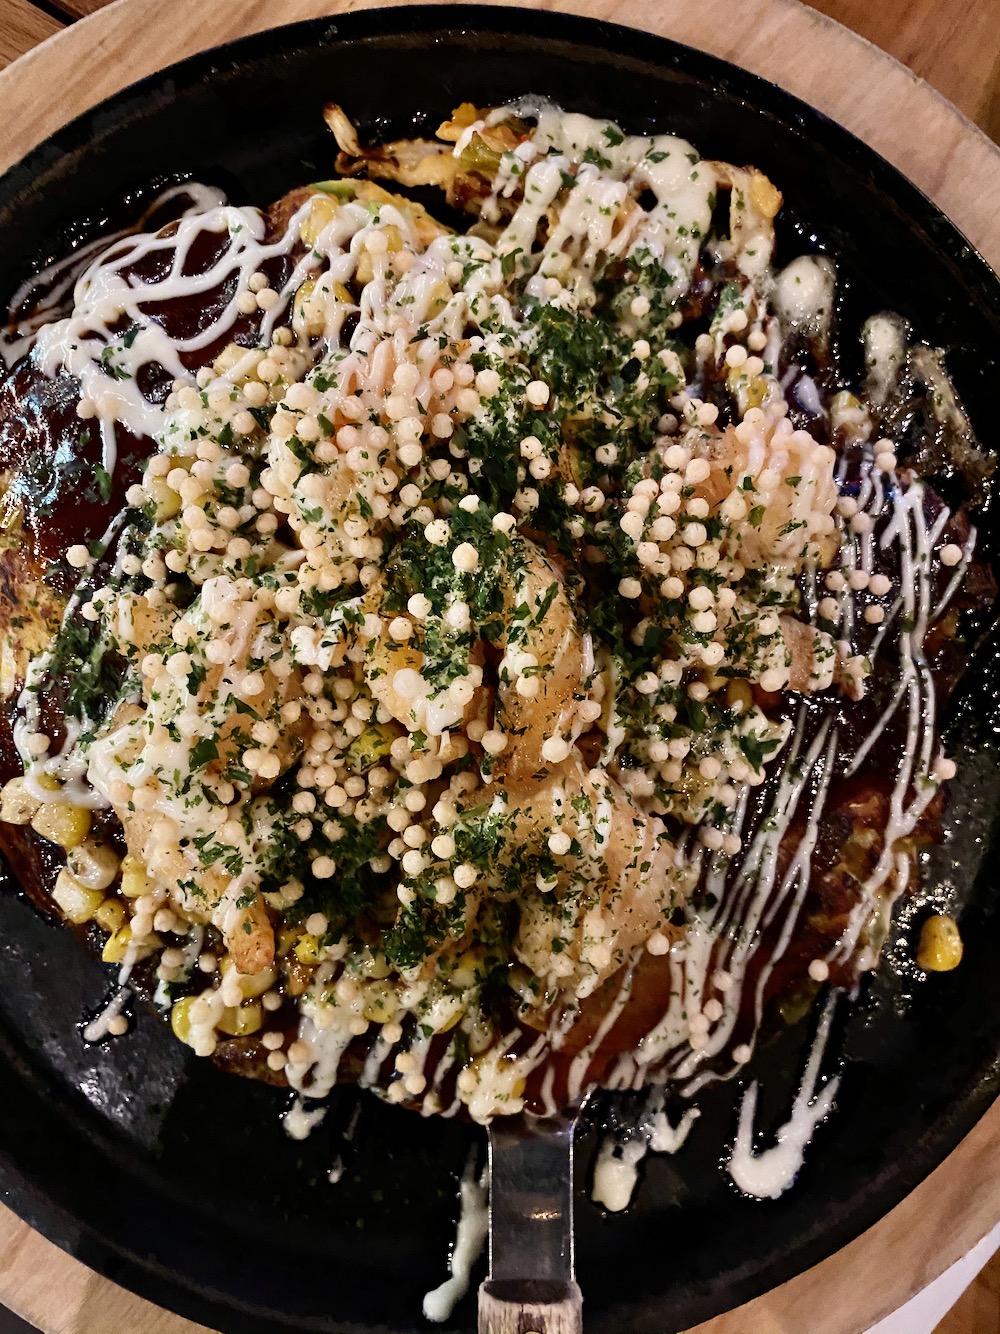 Gaijin Review: Japanese Pancakes